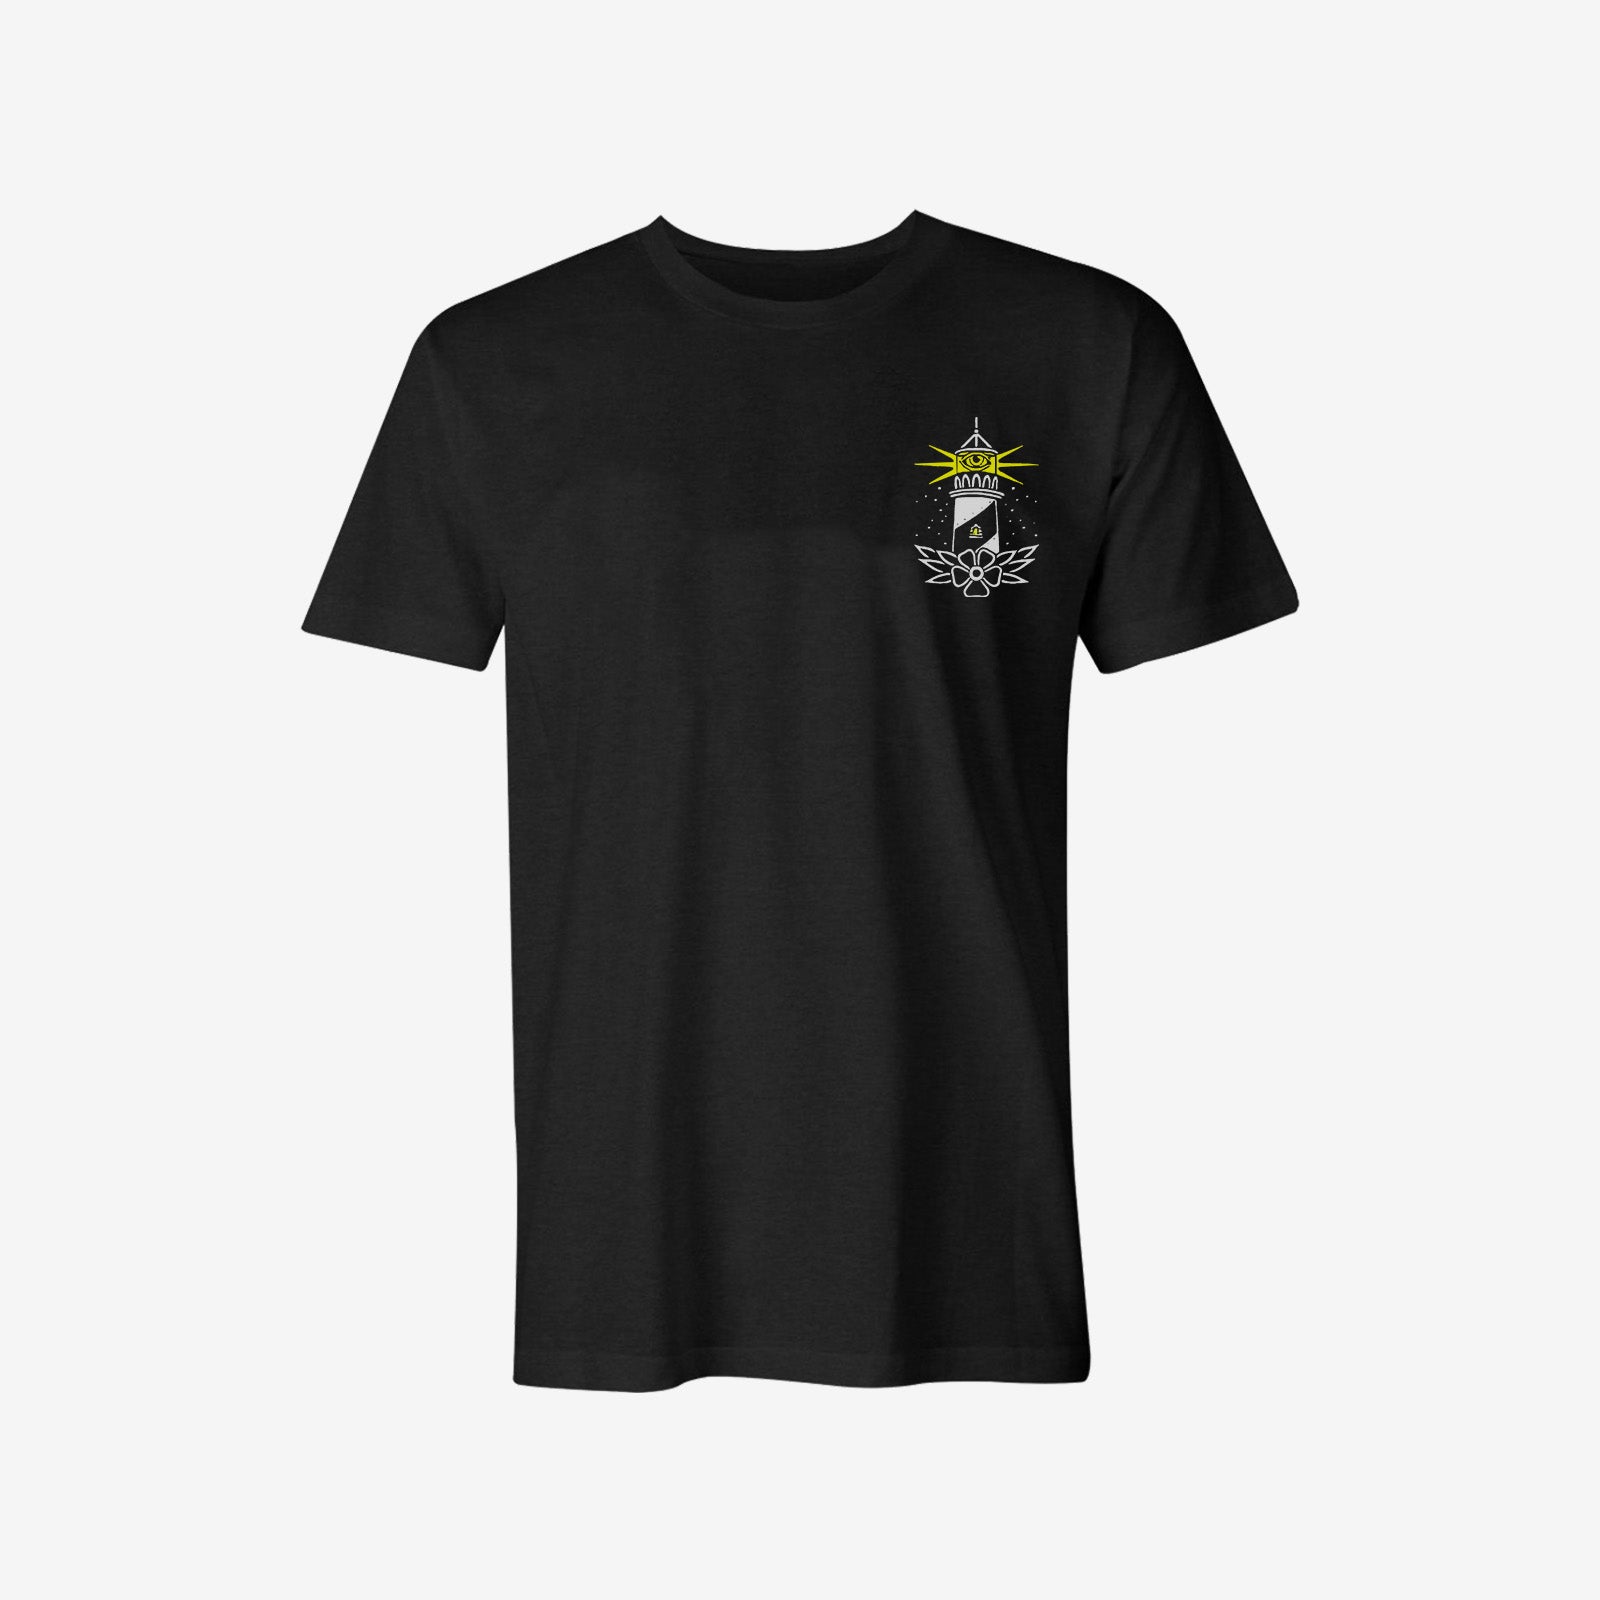 Uprandy Lighthouse Print Personalized T-Shirt - chicyea